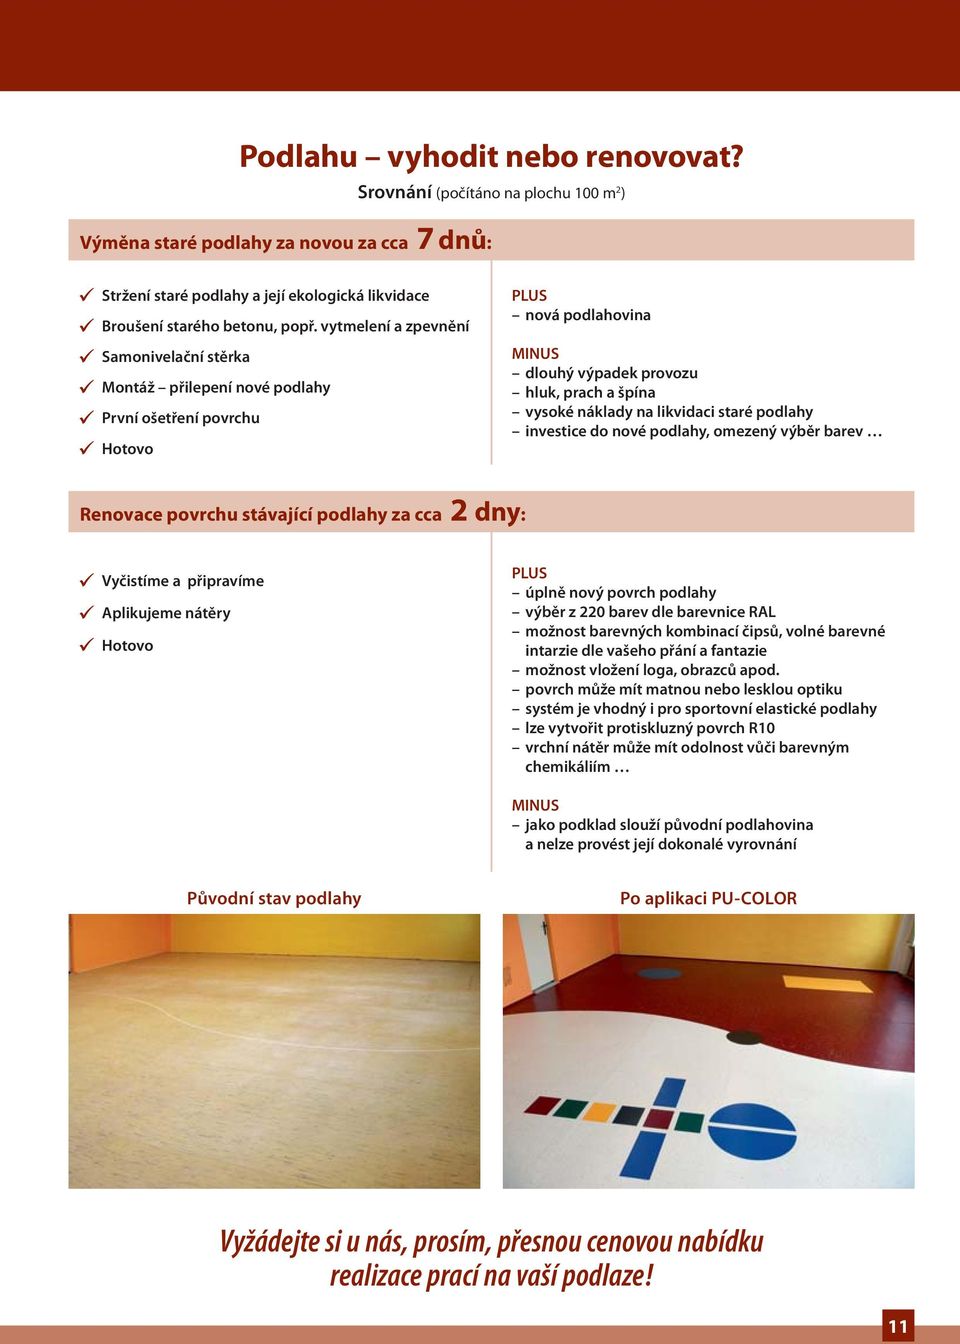 likvidaci staré podlahy investice do nové podlahy, omezený výběr barev Renovace povrchu stávající podlahy za cca 2 dny: Vyčistíme a připravíme Aplikujeme nátěry Hotovo PLUS úplně nový povrch podlahy